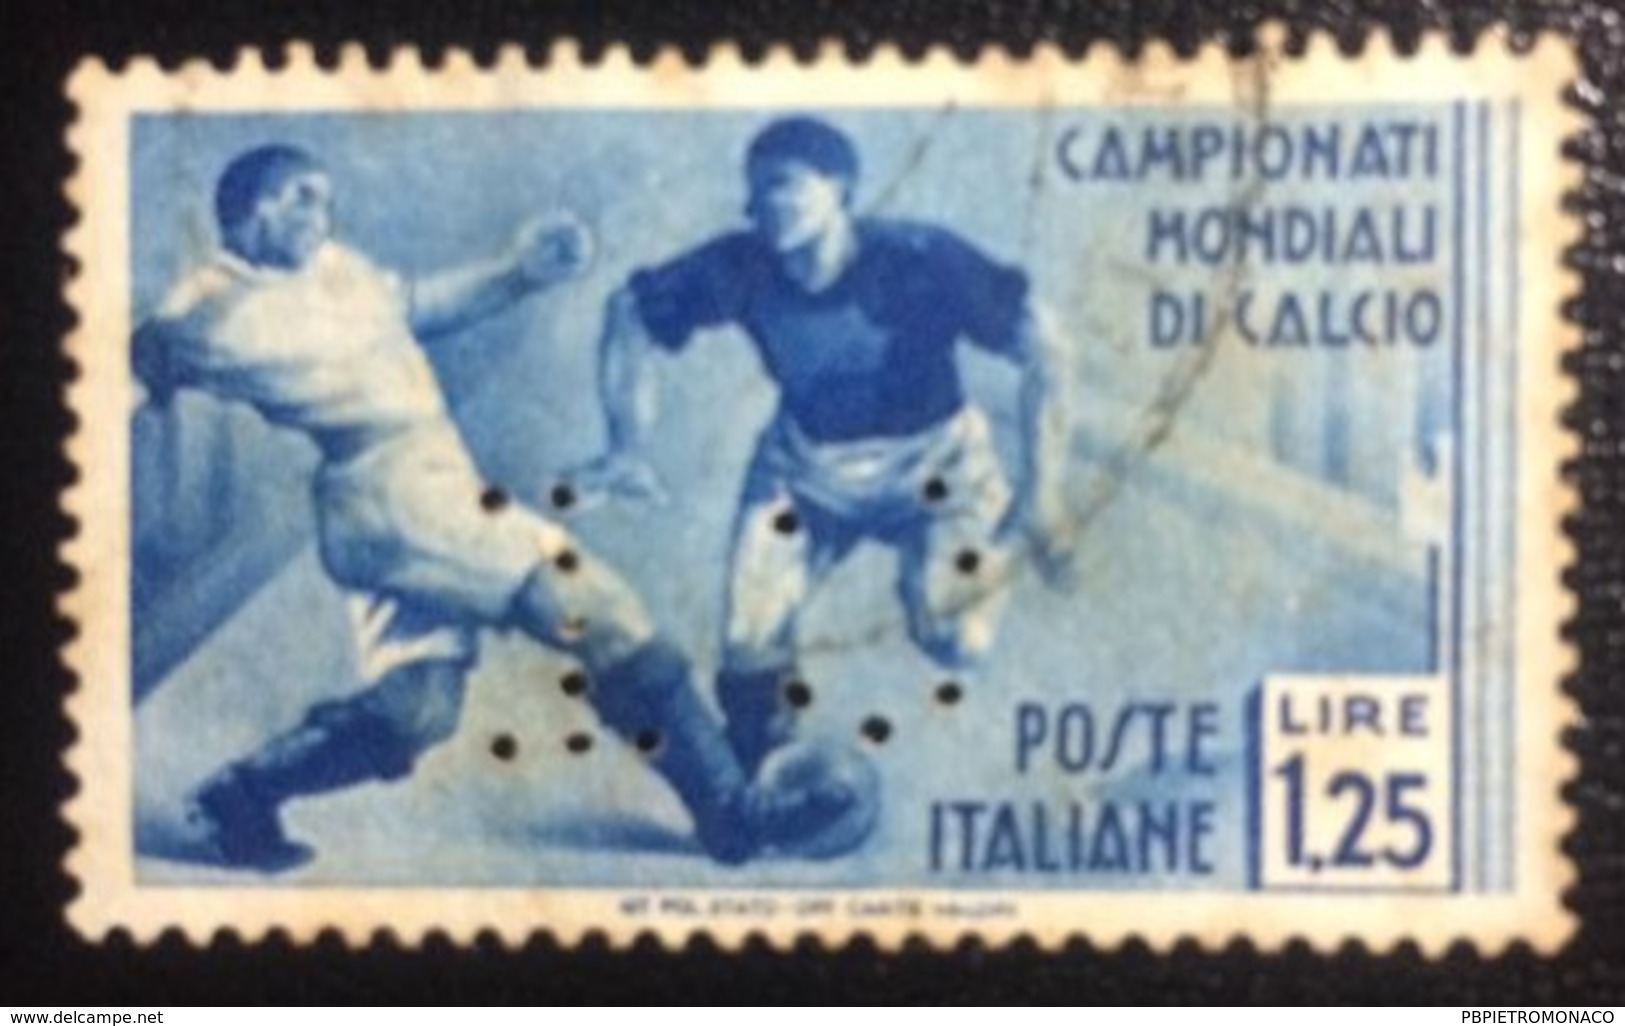 REGNO ITALIA  - 2º Campionato Mondiale Di Calcio Emesso Il 24 Maggio 1934 1,25 L. - Scarto-  Perforé Perfin Perforato - Usati